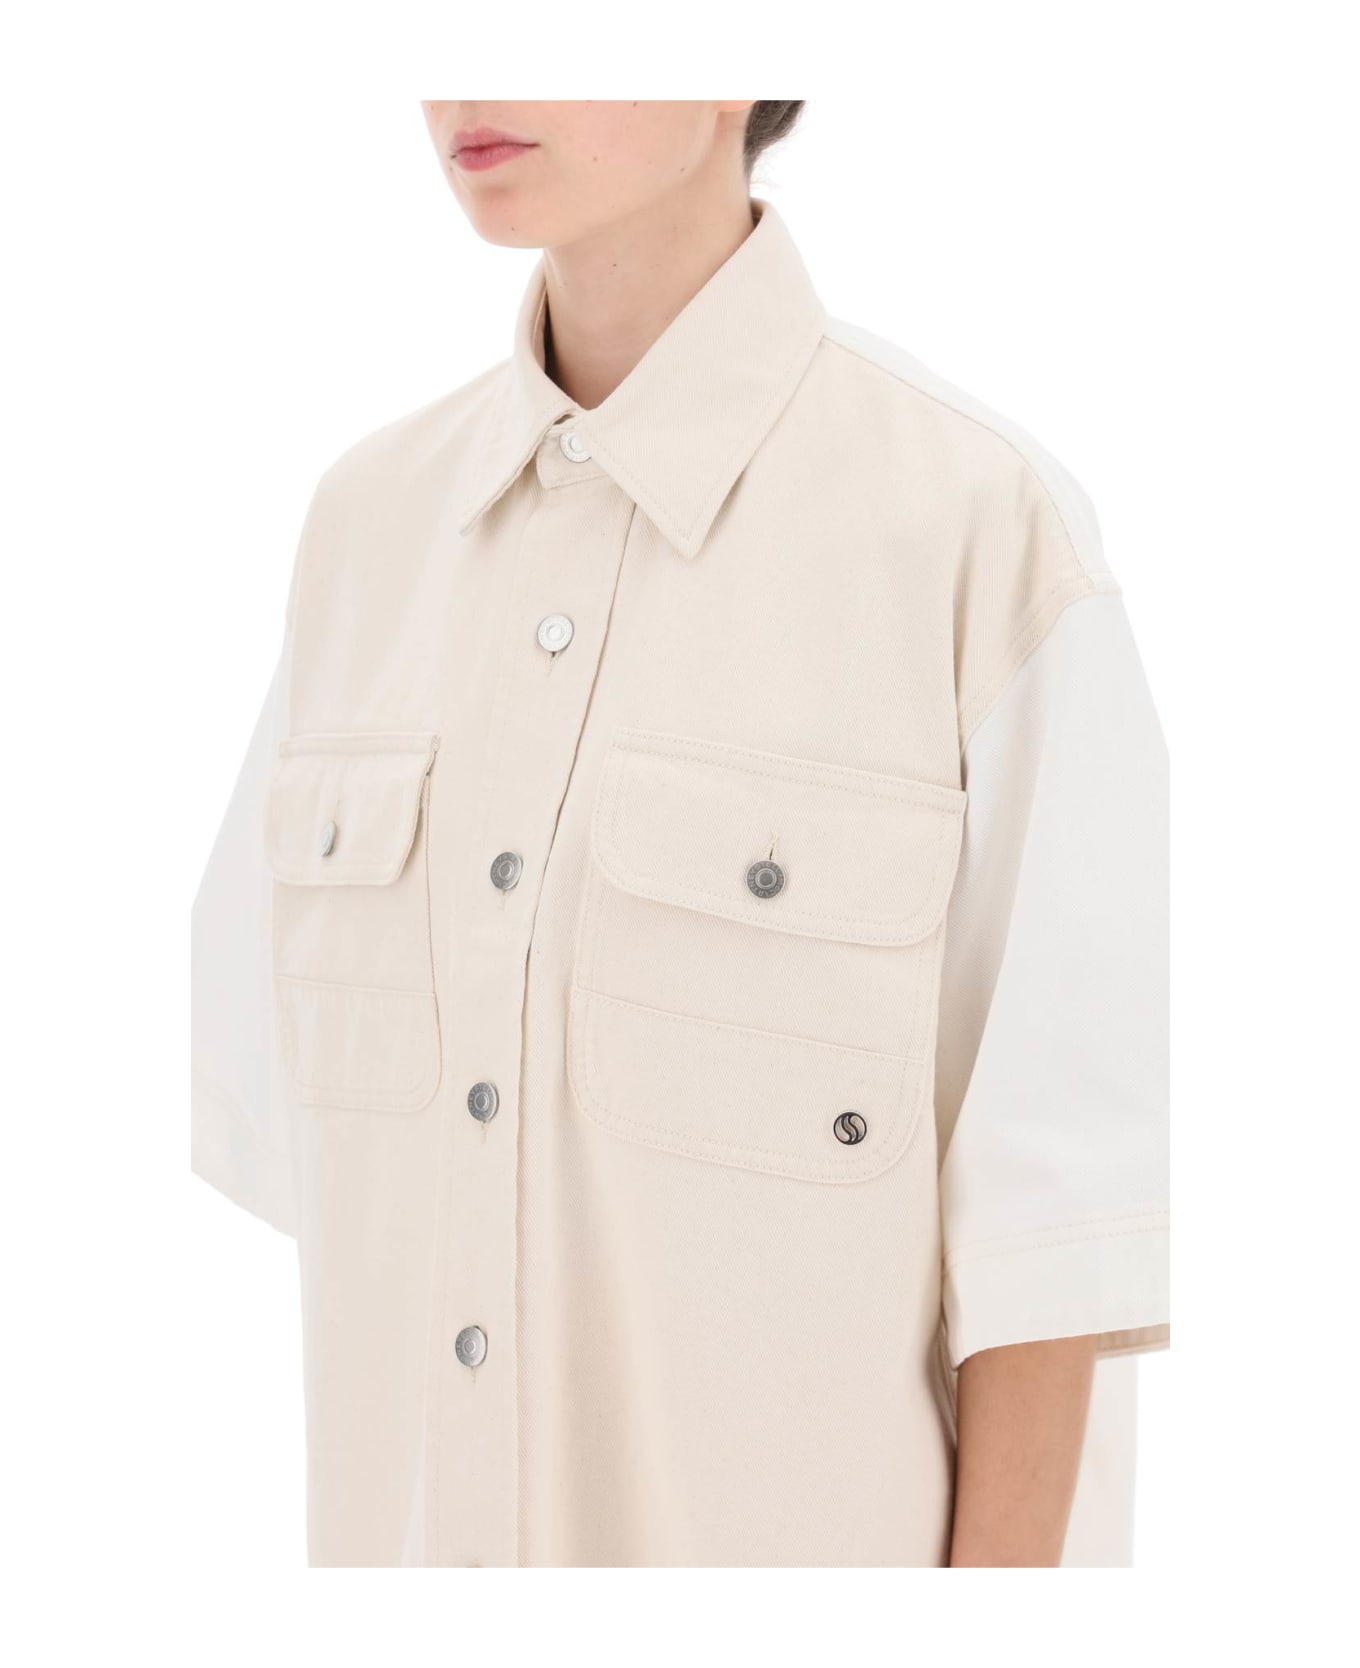 Stella McCartney Denim Shirt - WHITEECRU (White) シャツ